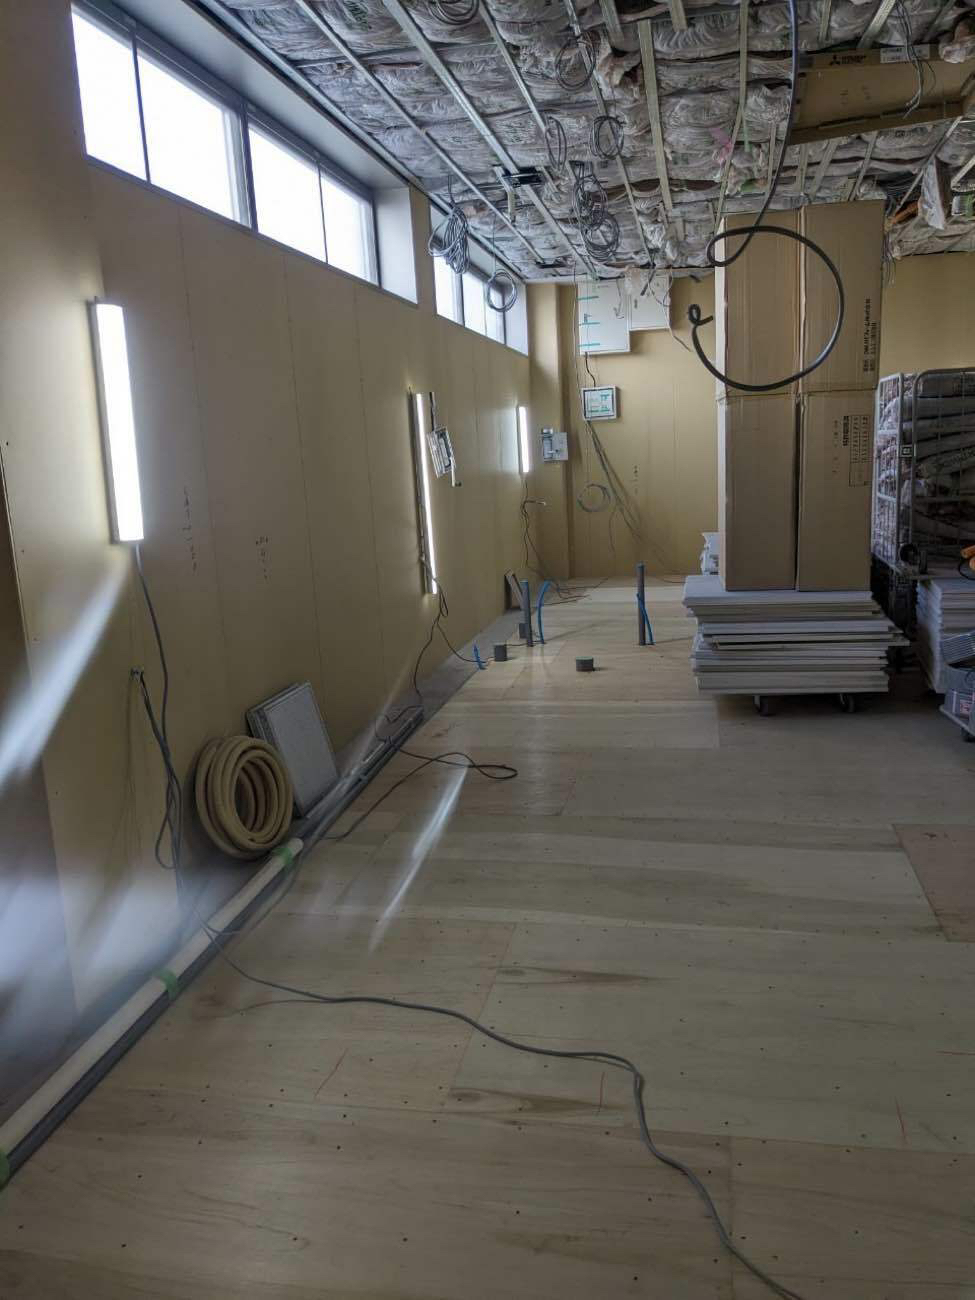 千葉県松戸市の病院にて、新装工事に伴う置床を行いました。（乾式二重床）【秀和建工】